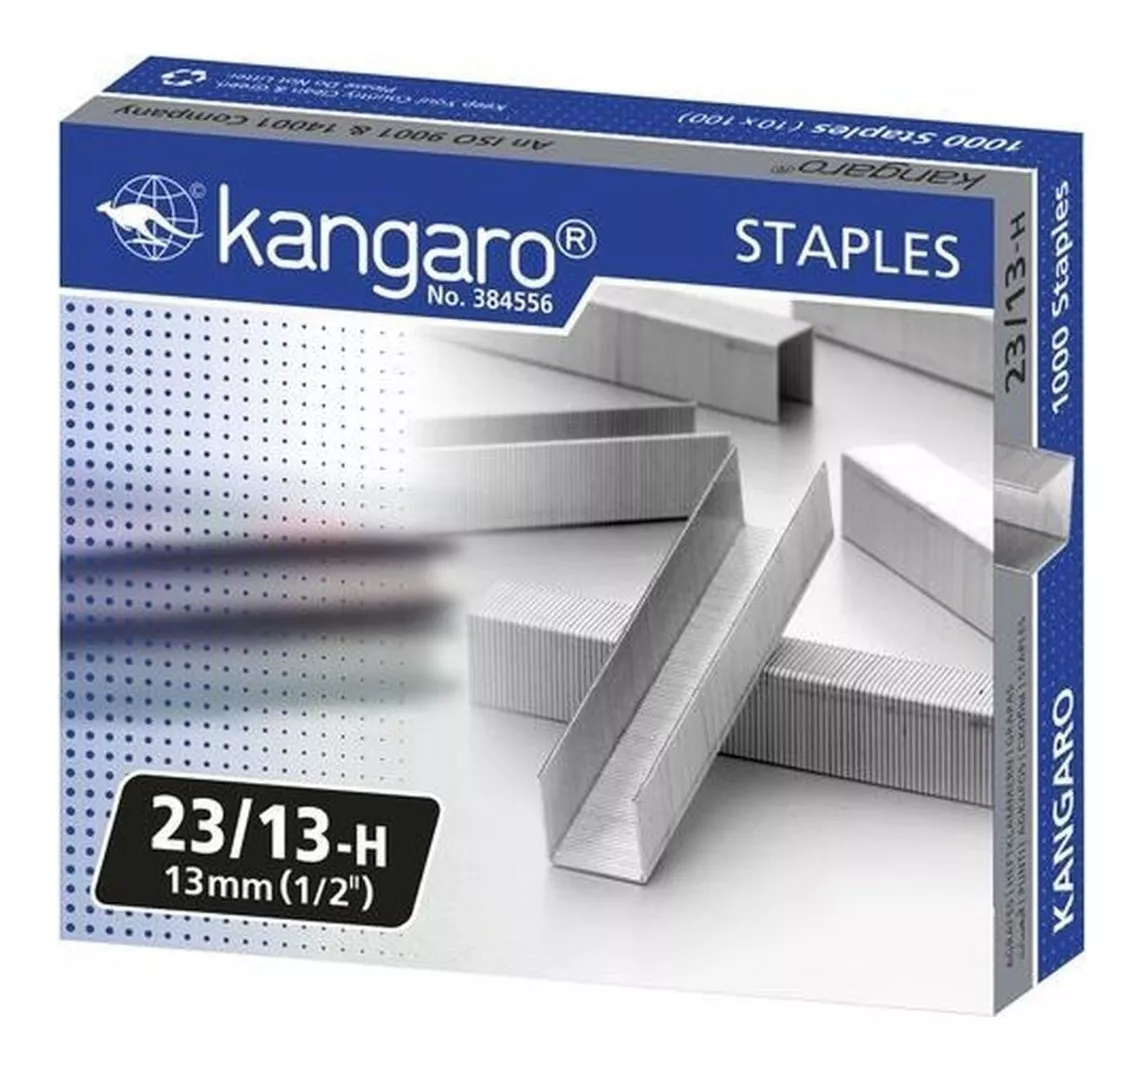 Grapa Industrial Kangaro 23/13 13mm (1/2")